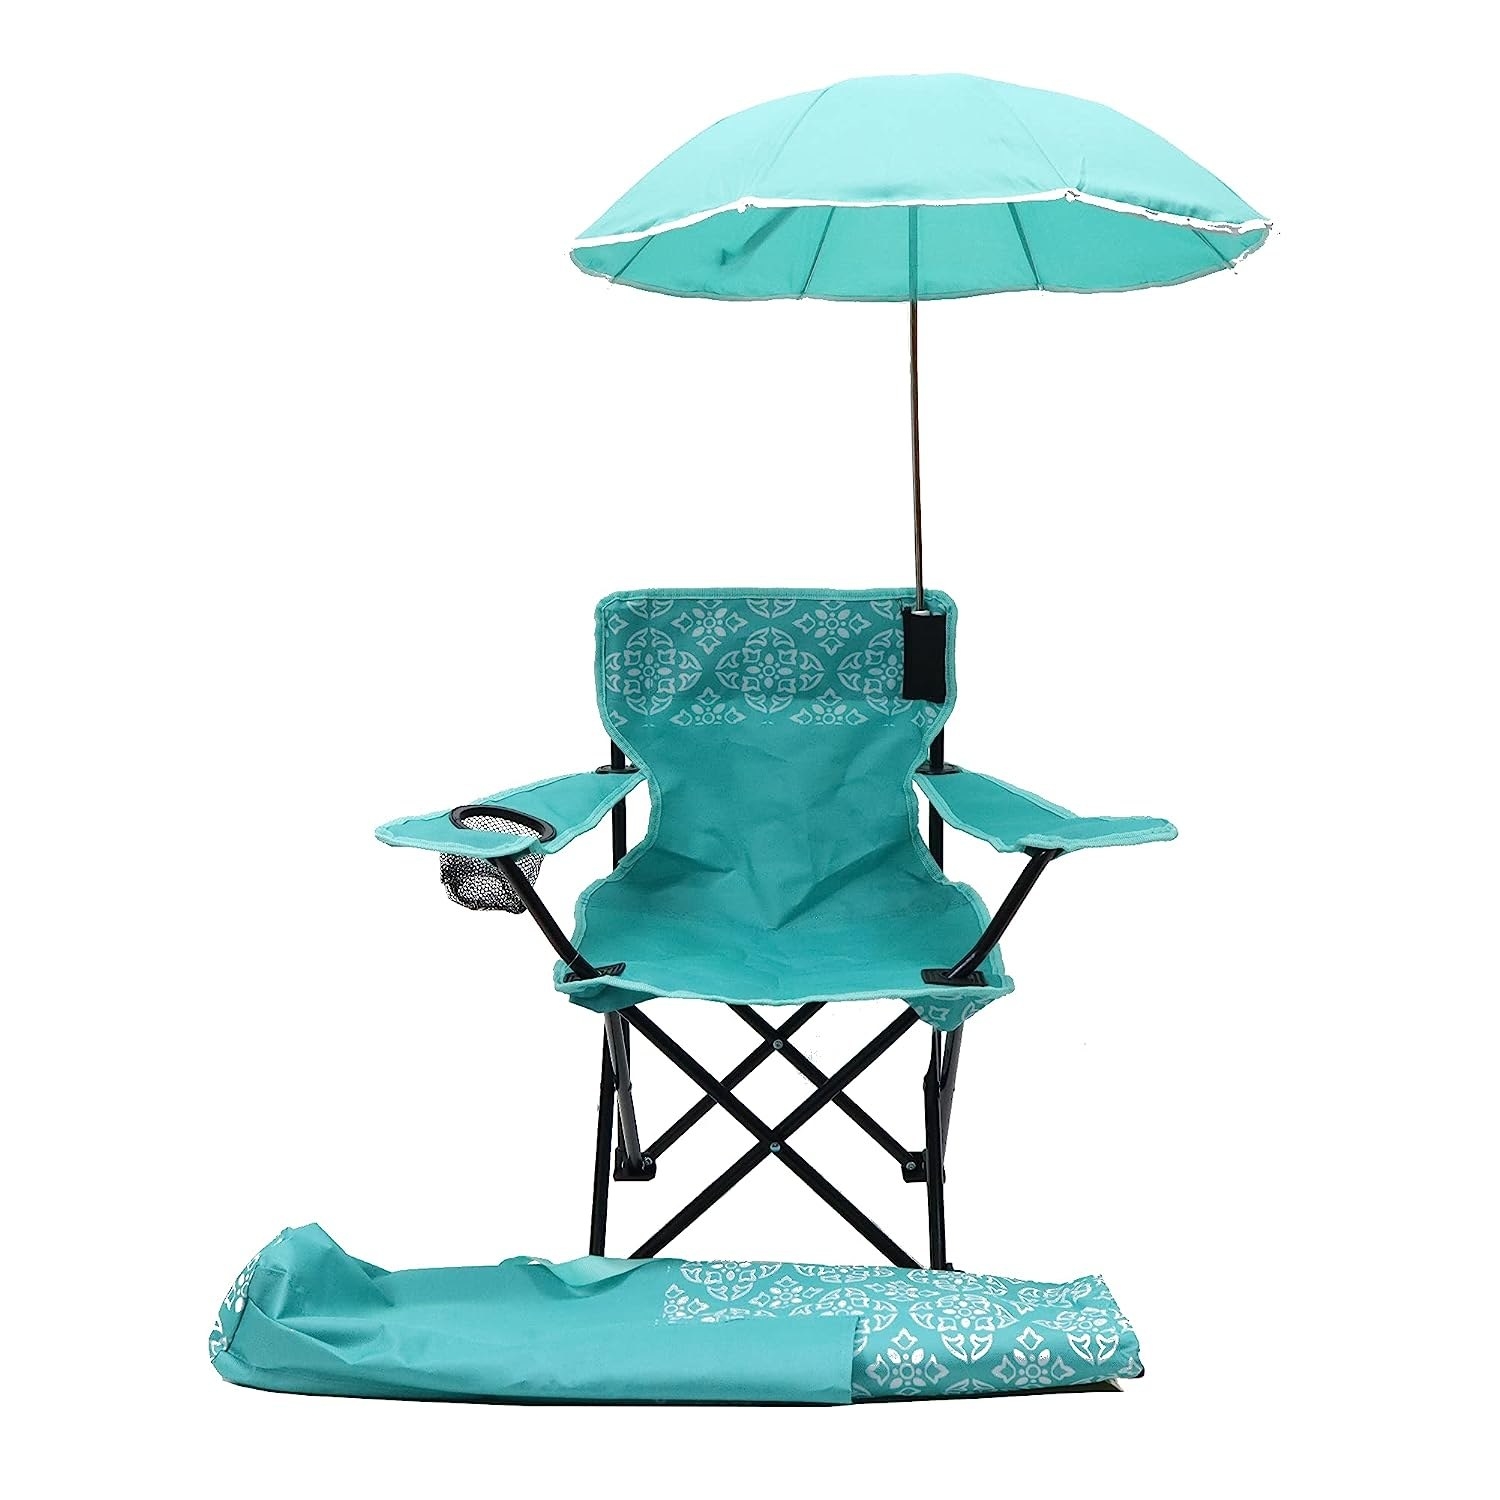 Teal beach chair